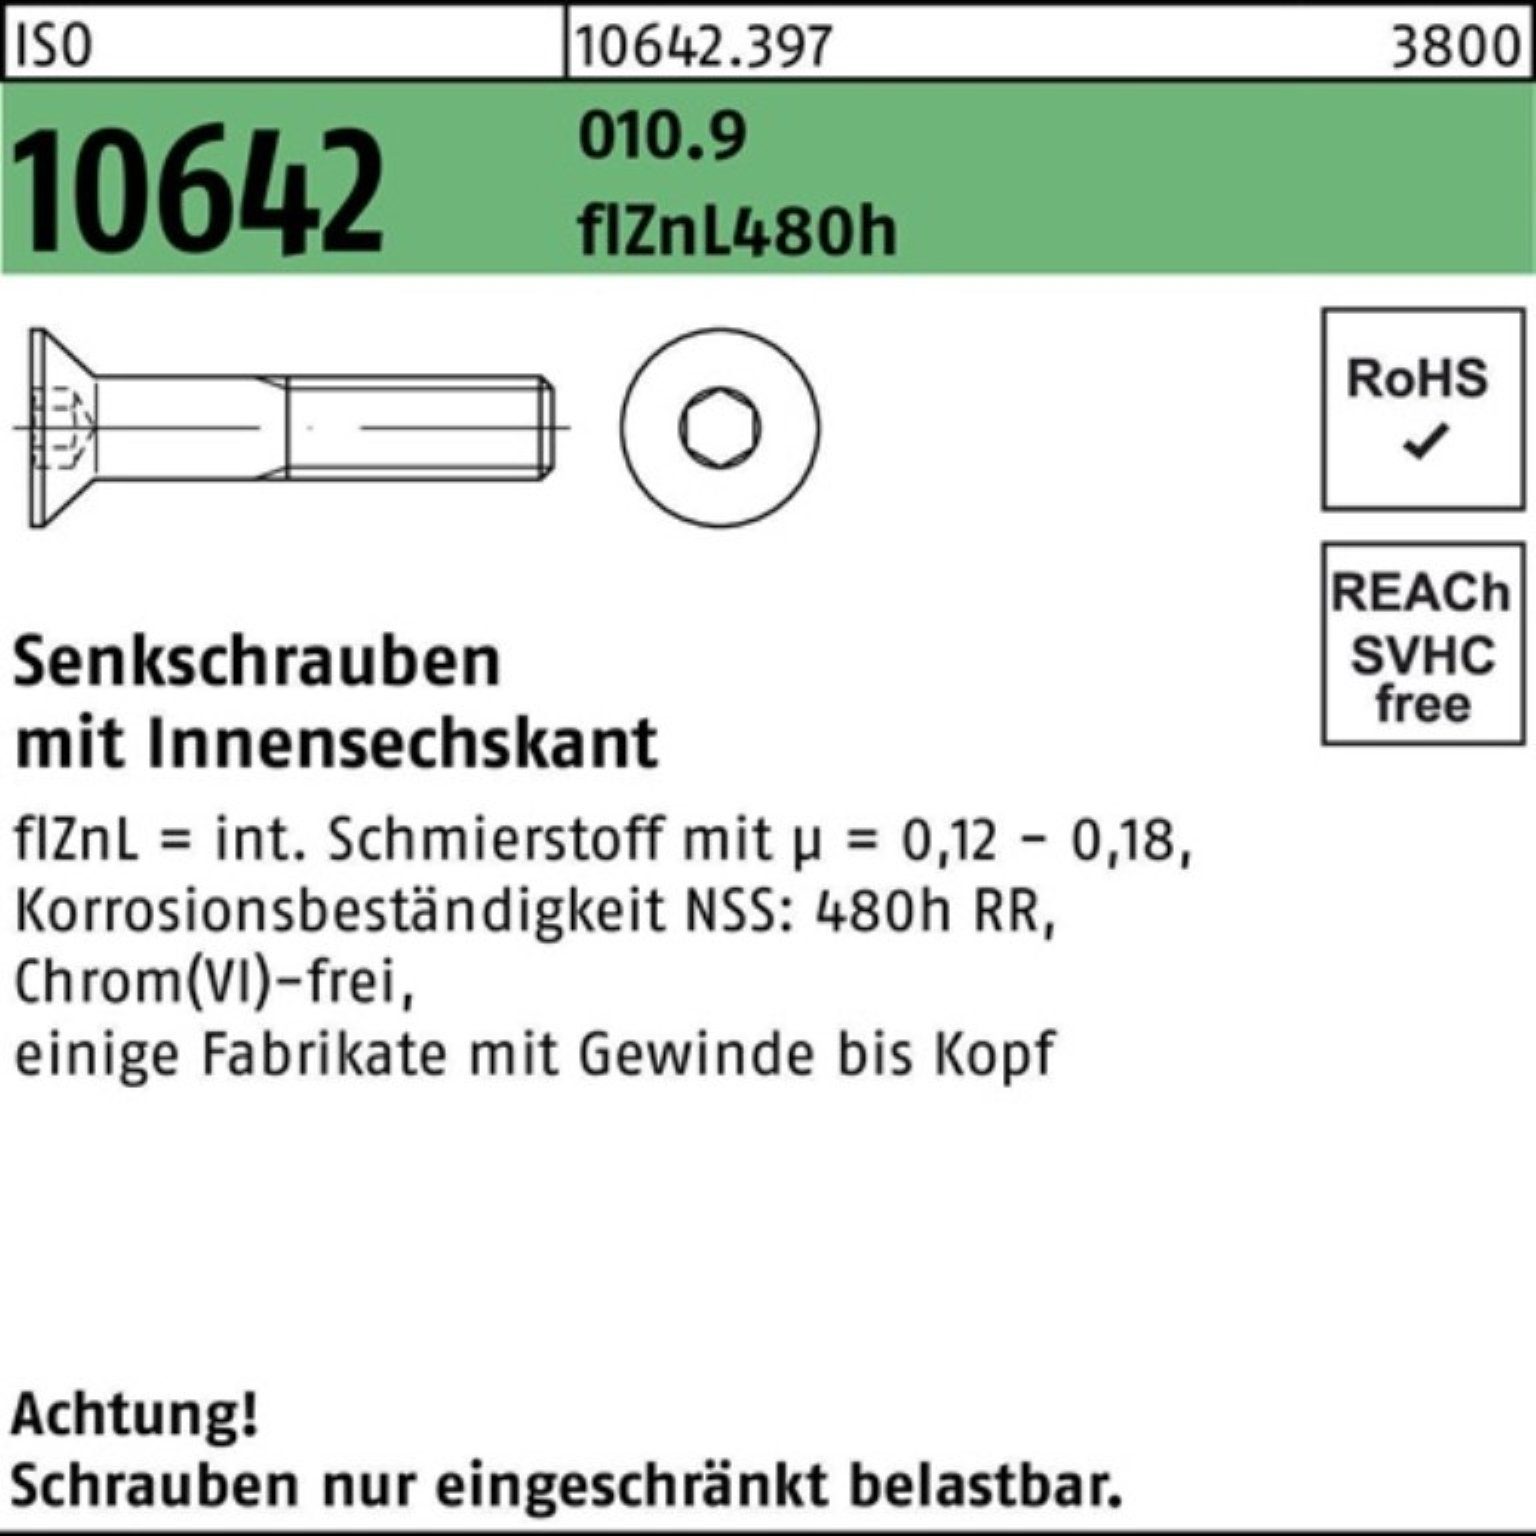 Reyher Senkschraube 100er Pack Senkschraube ISO 10642 Innen-6kt M12x45 010.9 flZnL 480h zi